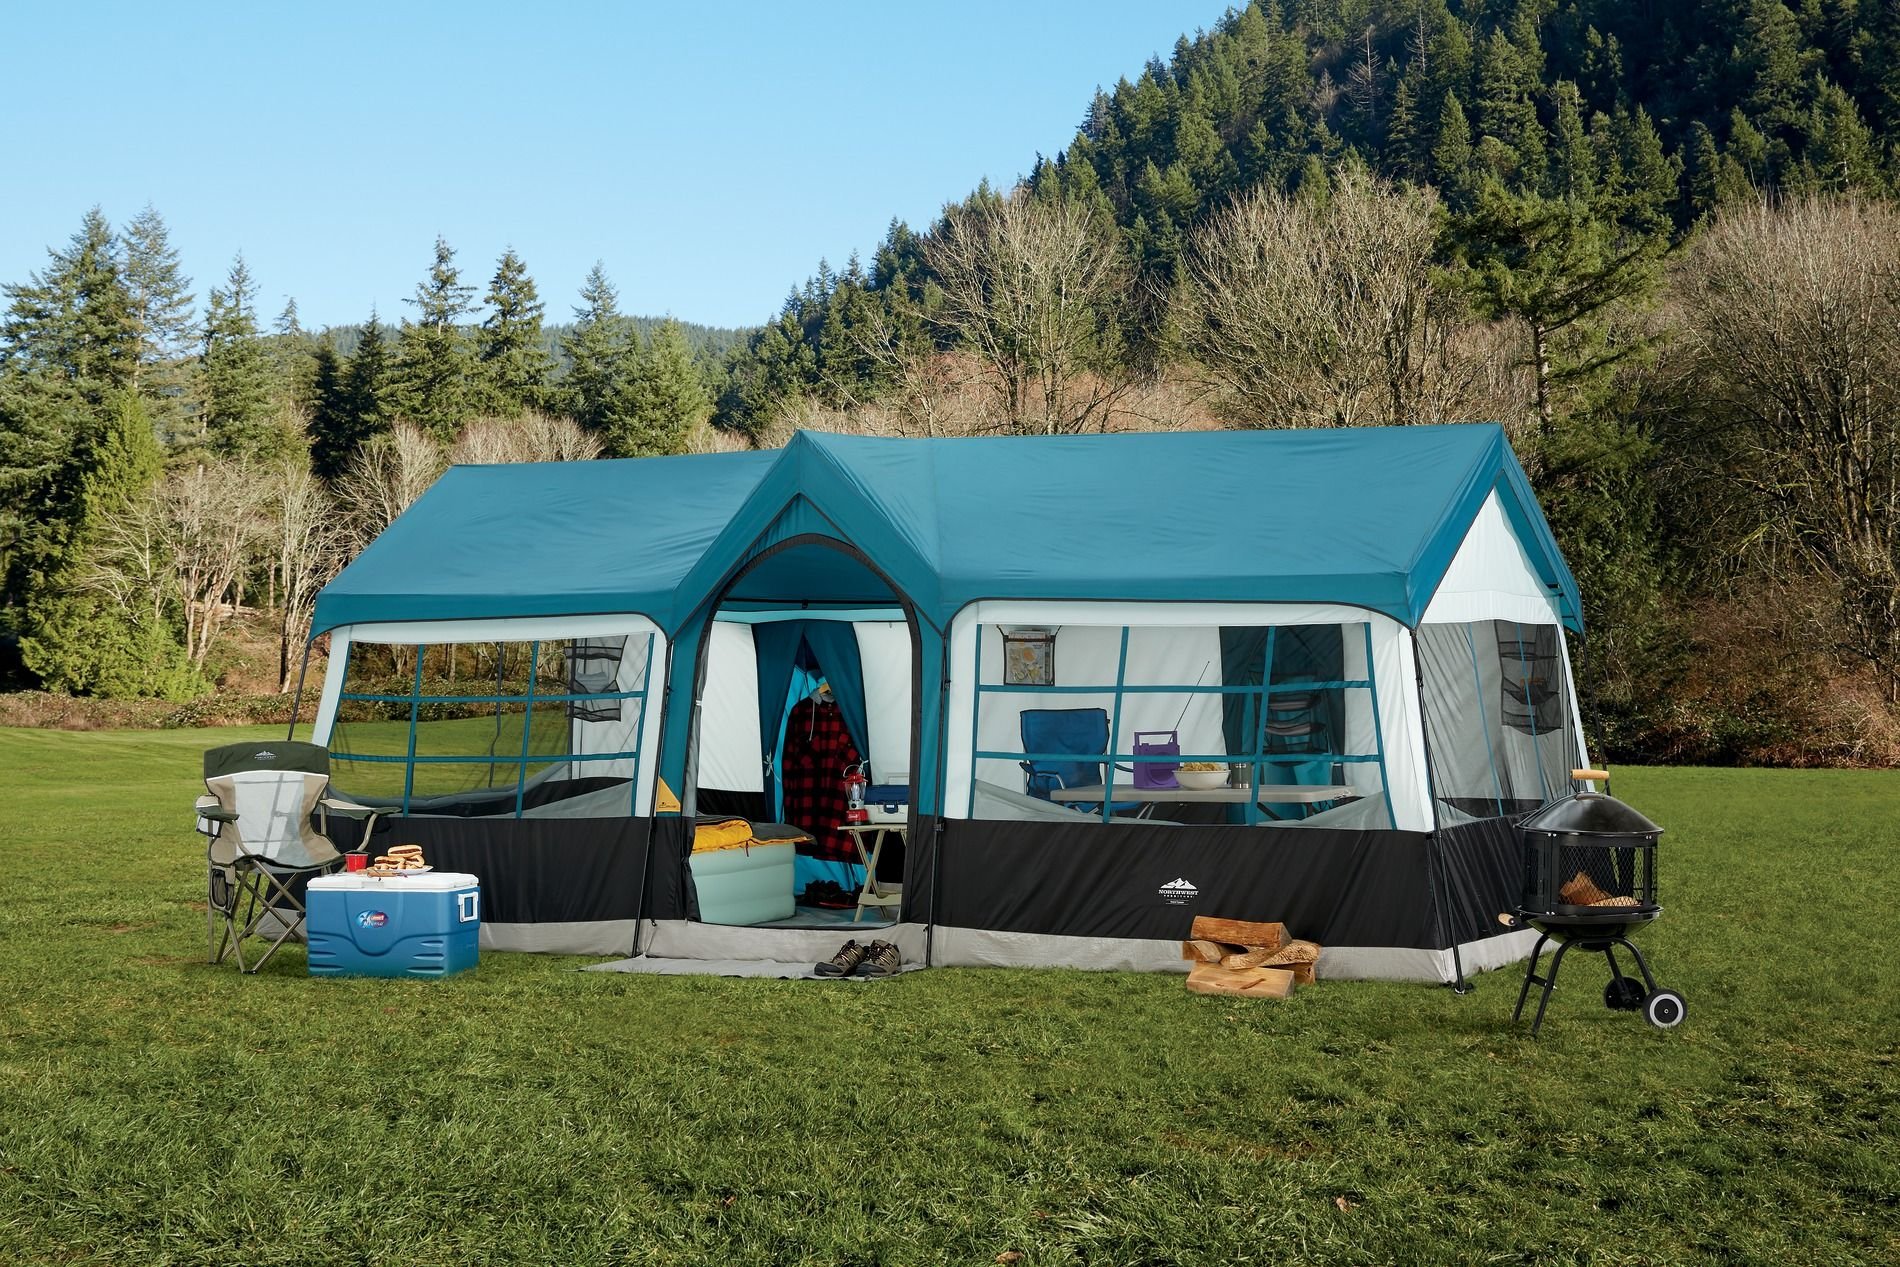 Недорогой кемпинг. Палатка кемпинг домик зеленый xyp602. Лагерь модульный (шатер и 2 палатки) Nash Base Camp. Палатка papallona Delta Cabin PP-206. Палатка Grand Canyon Family Adventure Camping.